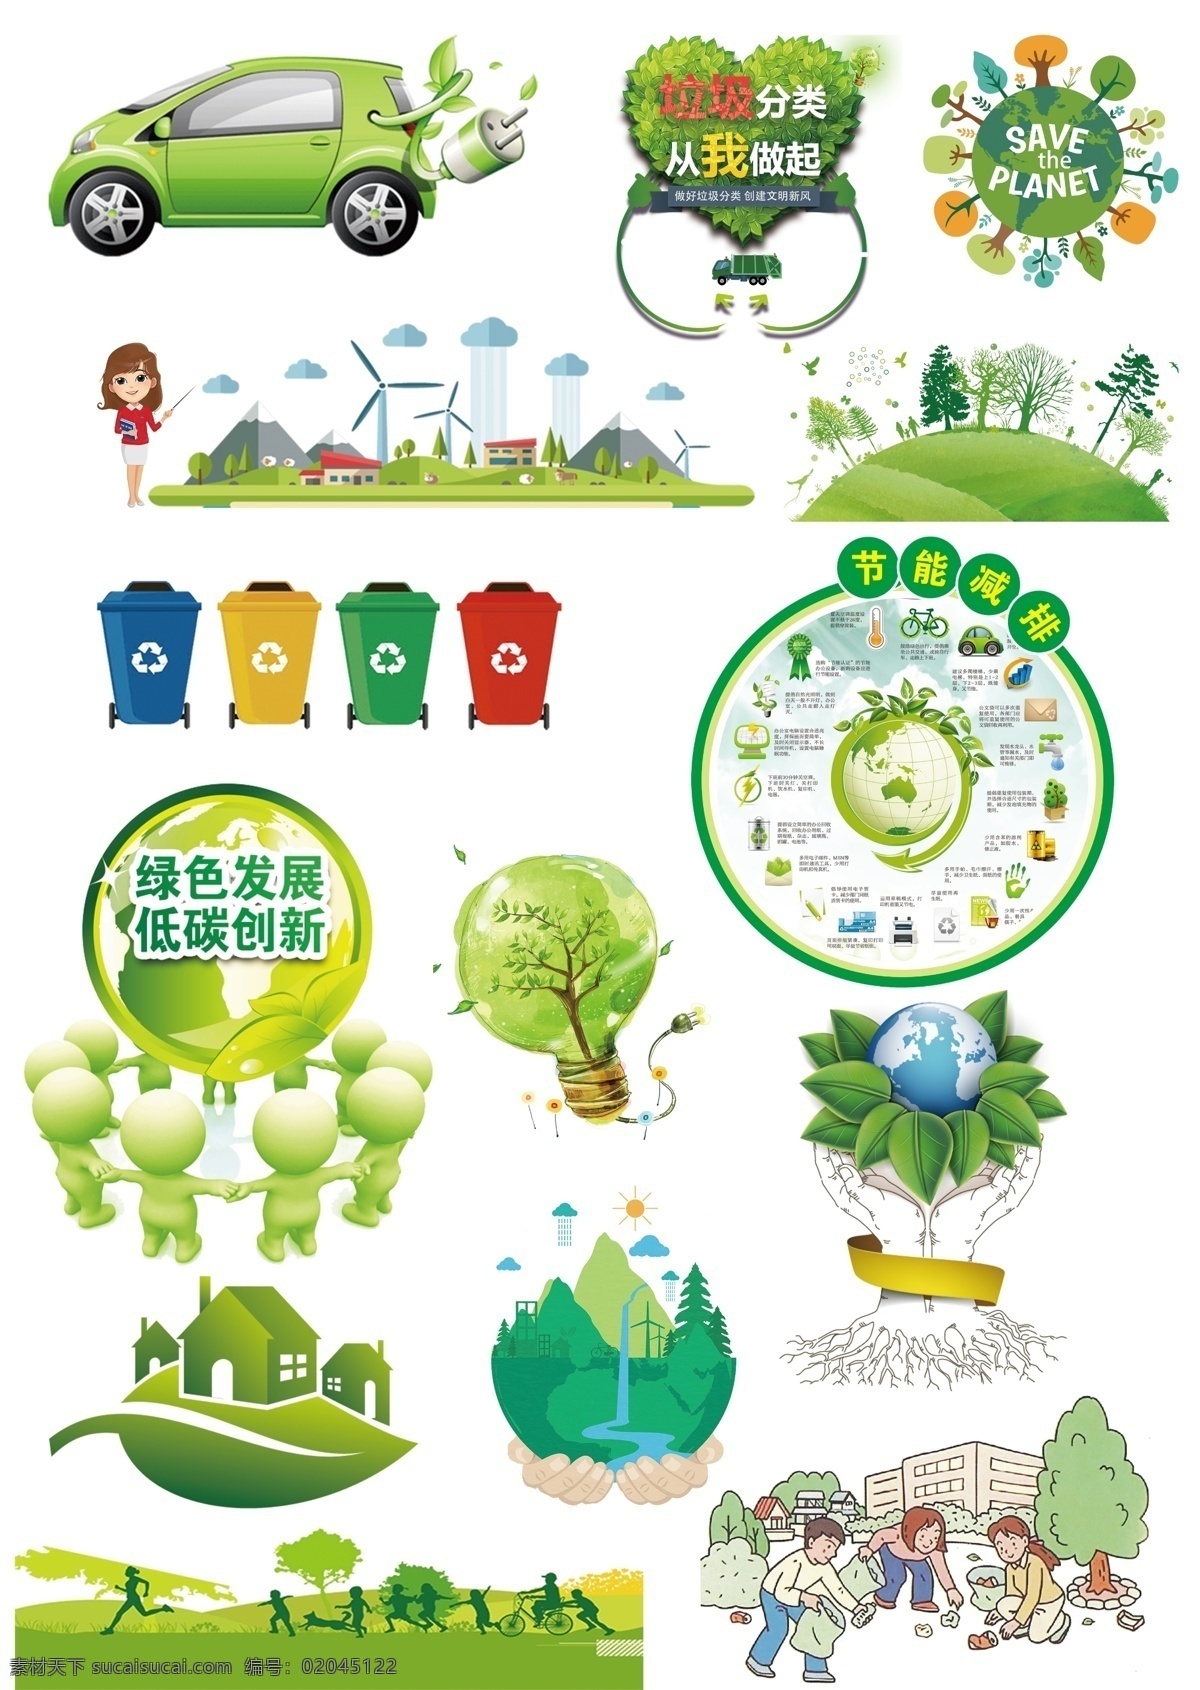 节能减排素材 节能 环保 绿色 节能减排 节能环保 绿色安全